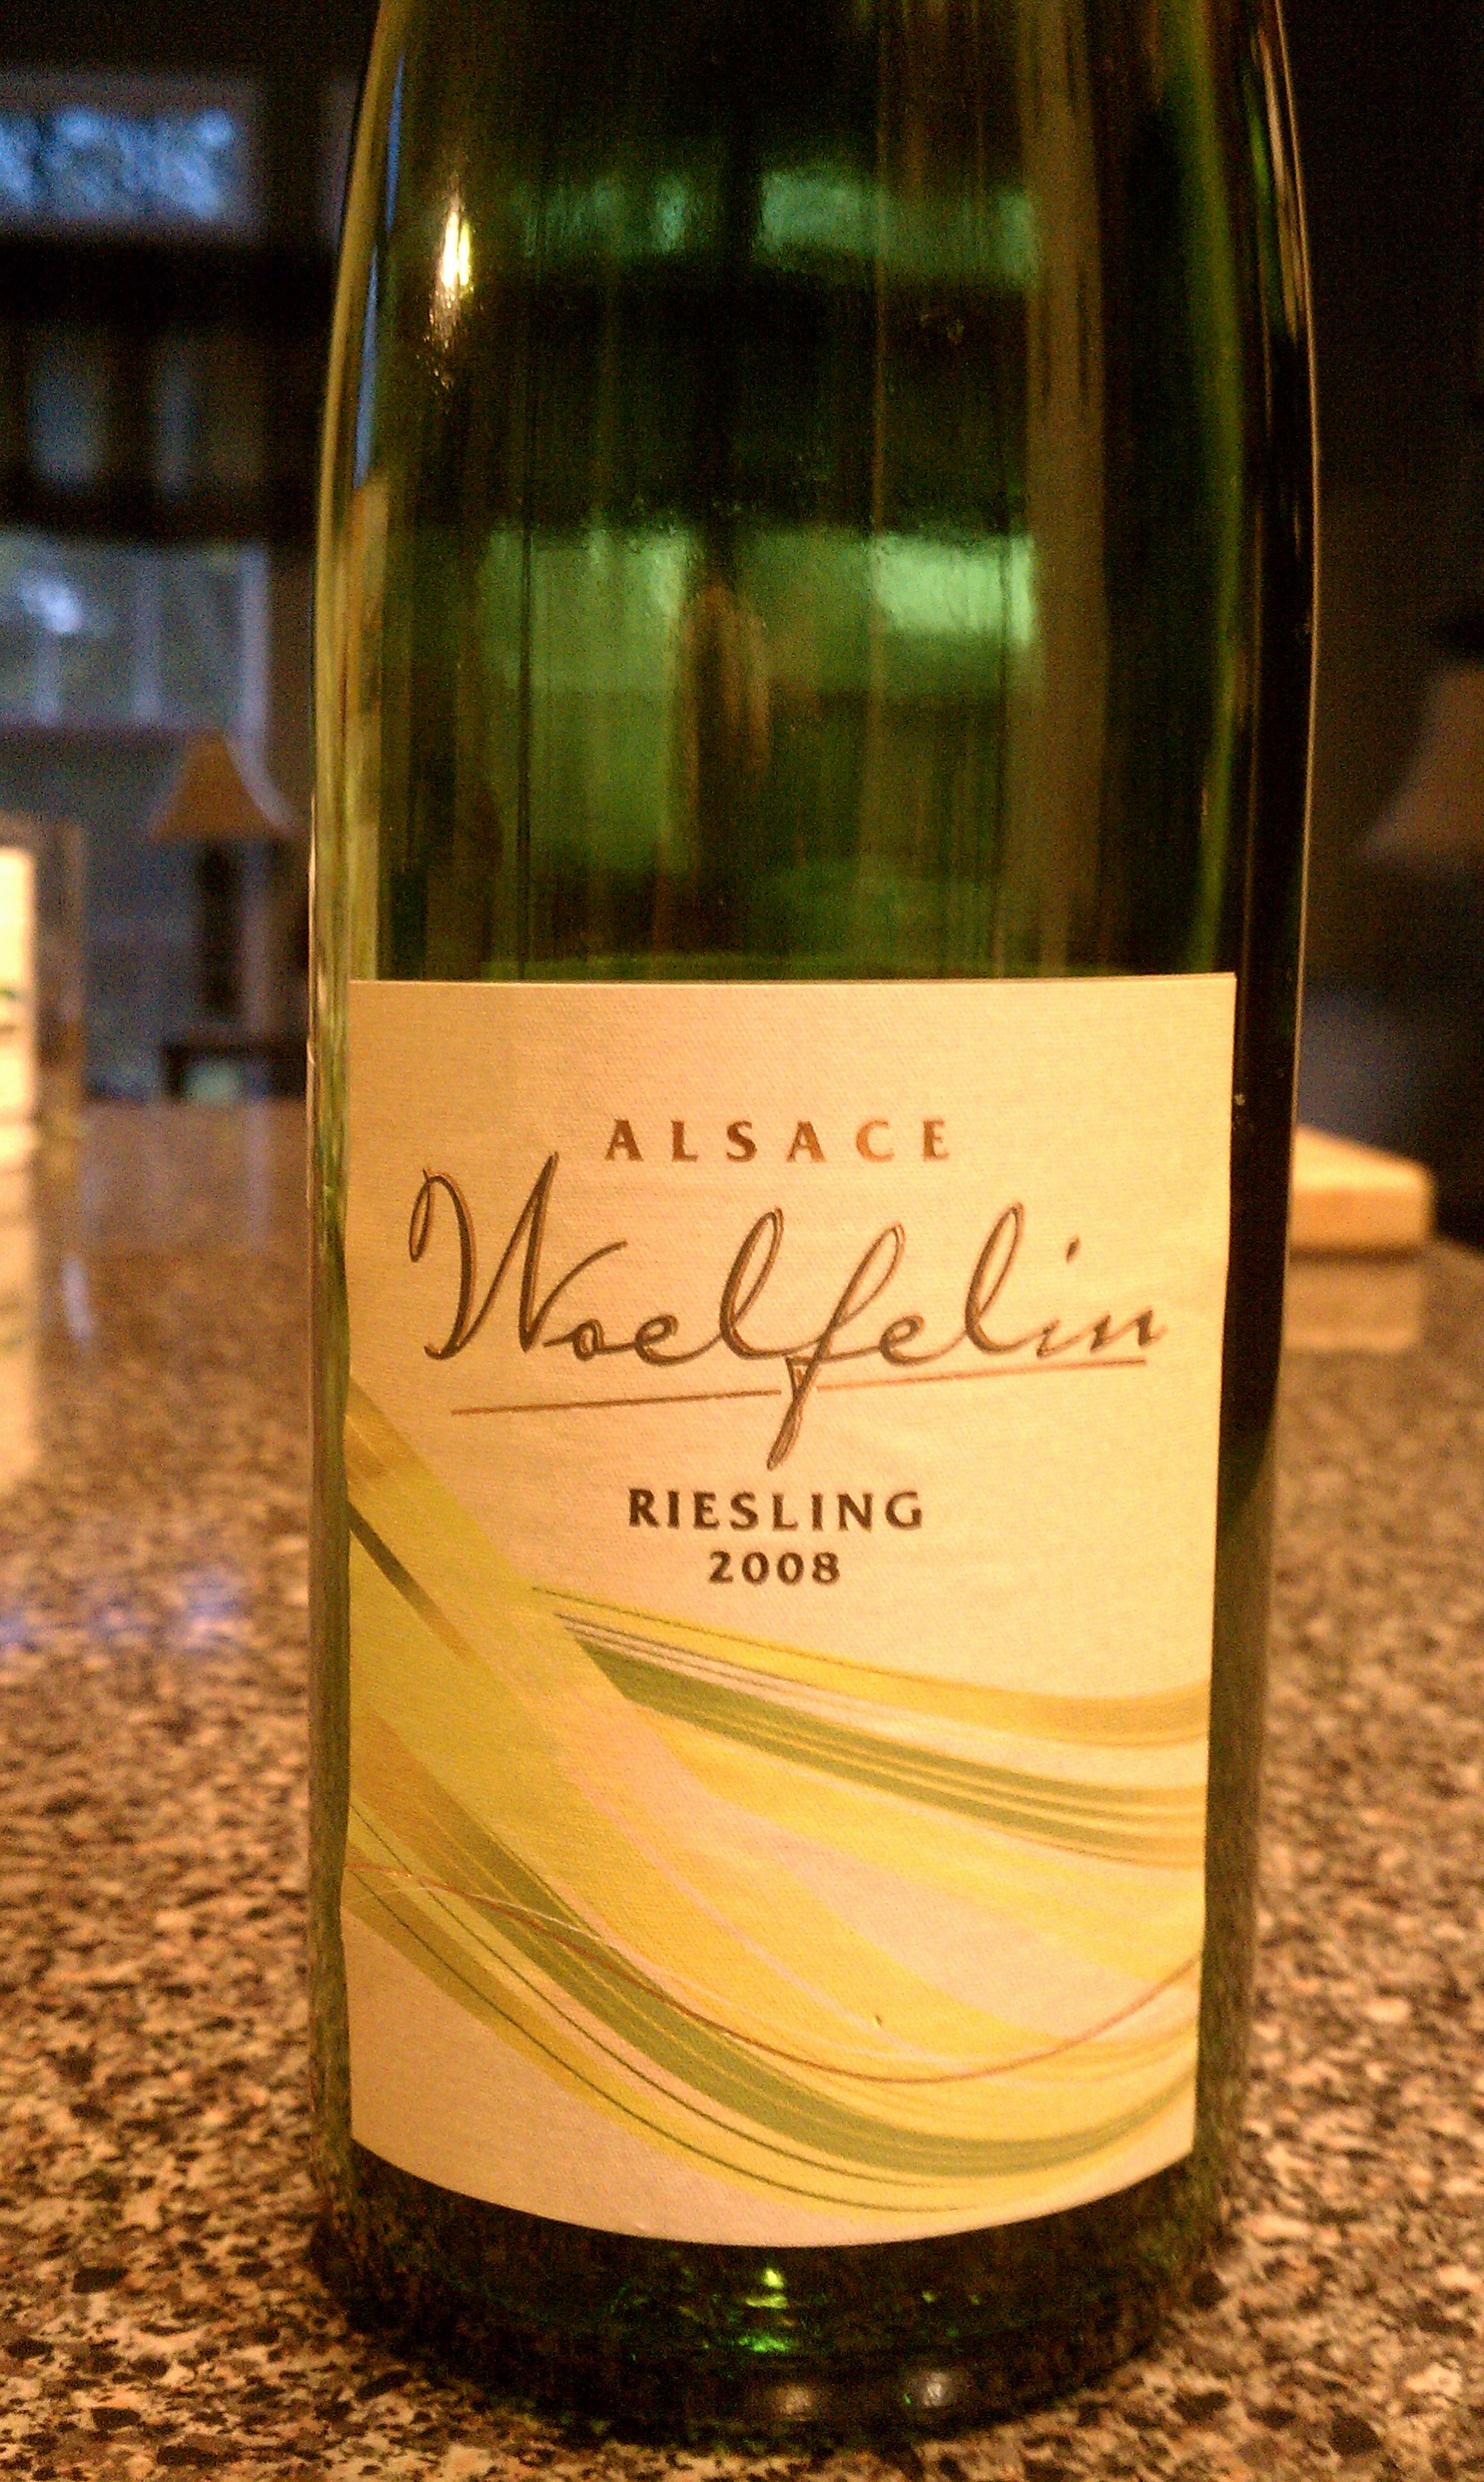 2008 Woelfelin Riesling